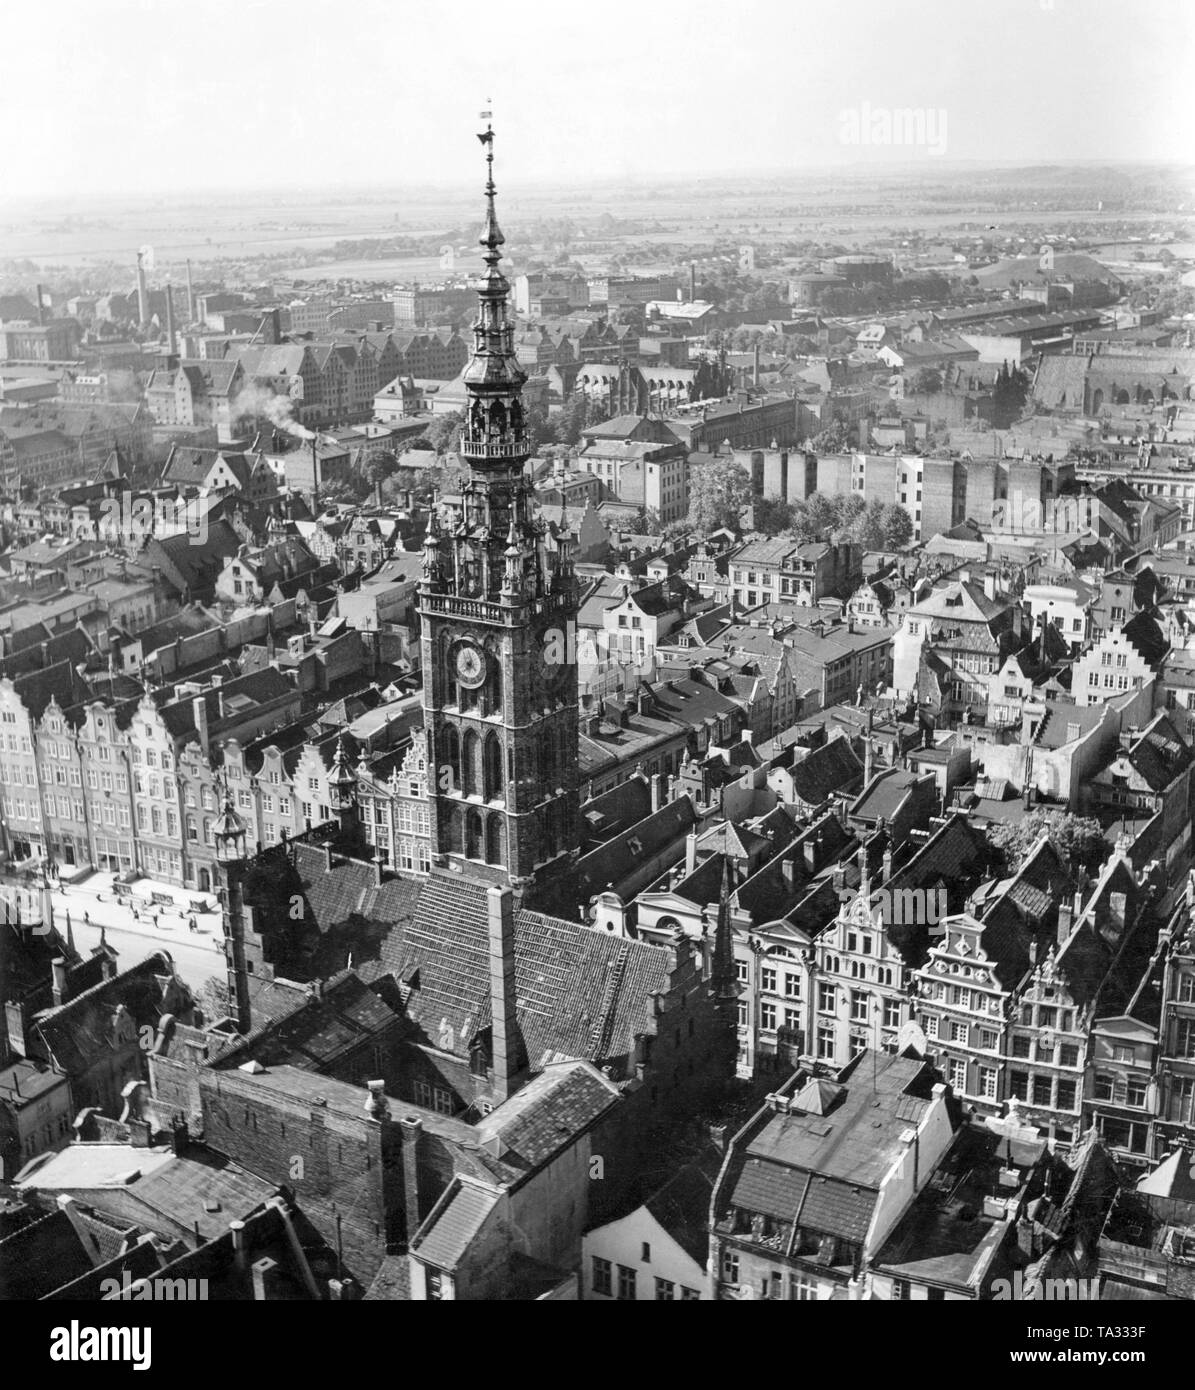 Vue de la tour de l'hôtel de ville de la ville principale et le marché Long de Gdansk, vu de l'église de Sainte Marie. Déjà à la fin du 13ème siècle, il y avait un précurseur, la tour a été construit de 1486 à 1488 par Heinrich Hetzel. La ville principale est la bonne vieille ville de Gdansk, en tant qu'il est antérieur à la vieille ville. Le quartier est aujourd'hui le véritable centre-ville. Banque D'Images